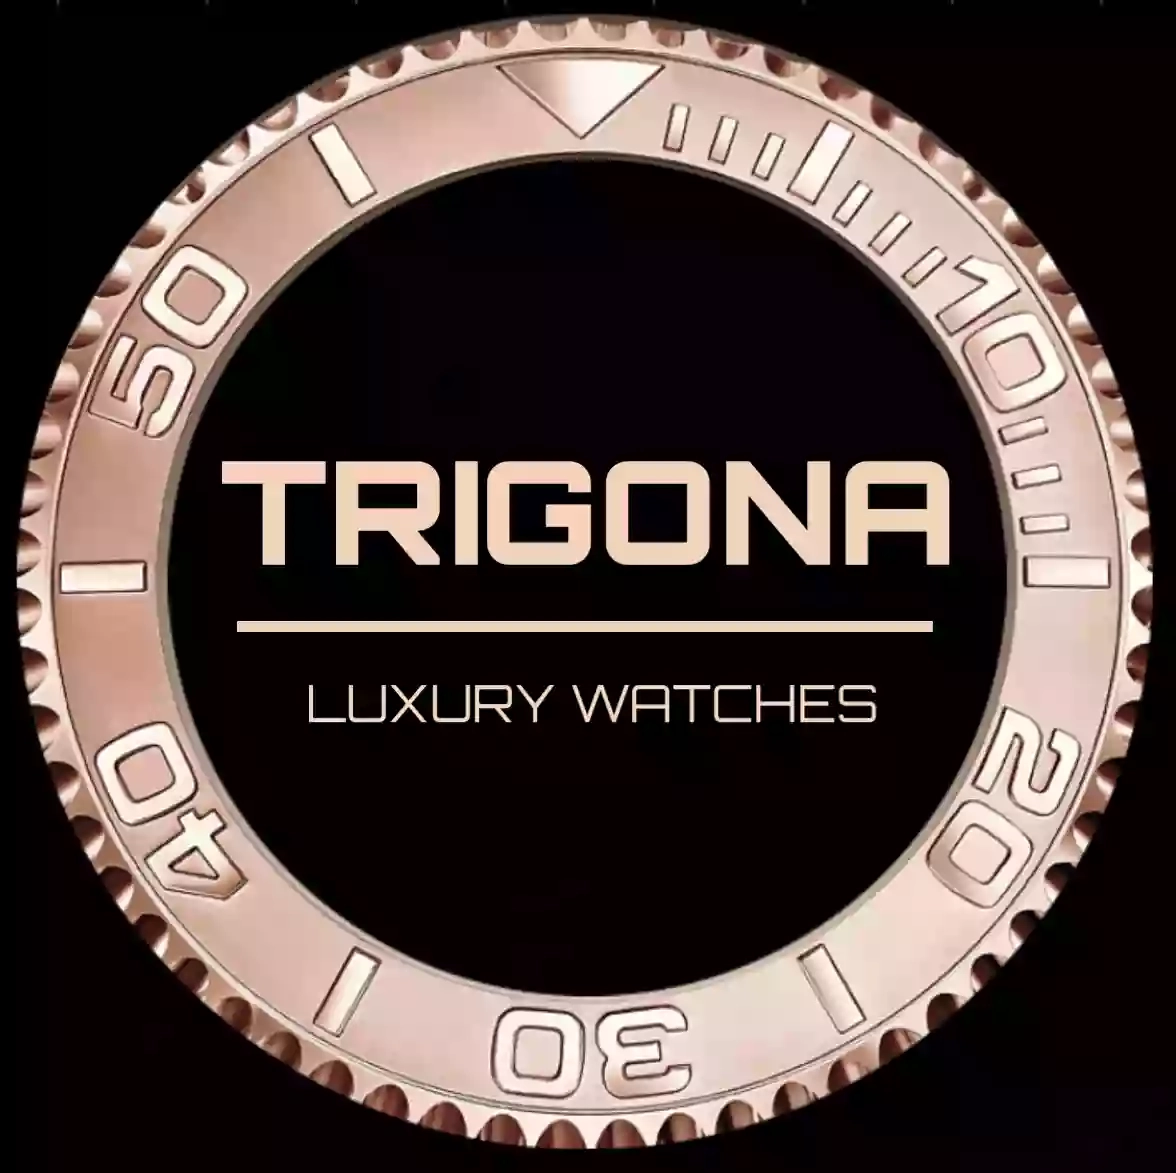 TRIGONA PREZIOSI S.R.L. - Gioielleria & Compro Oro